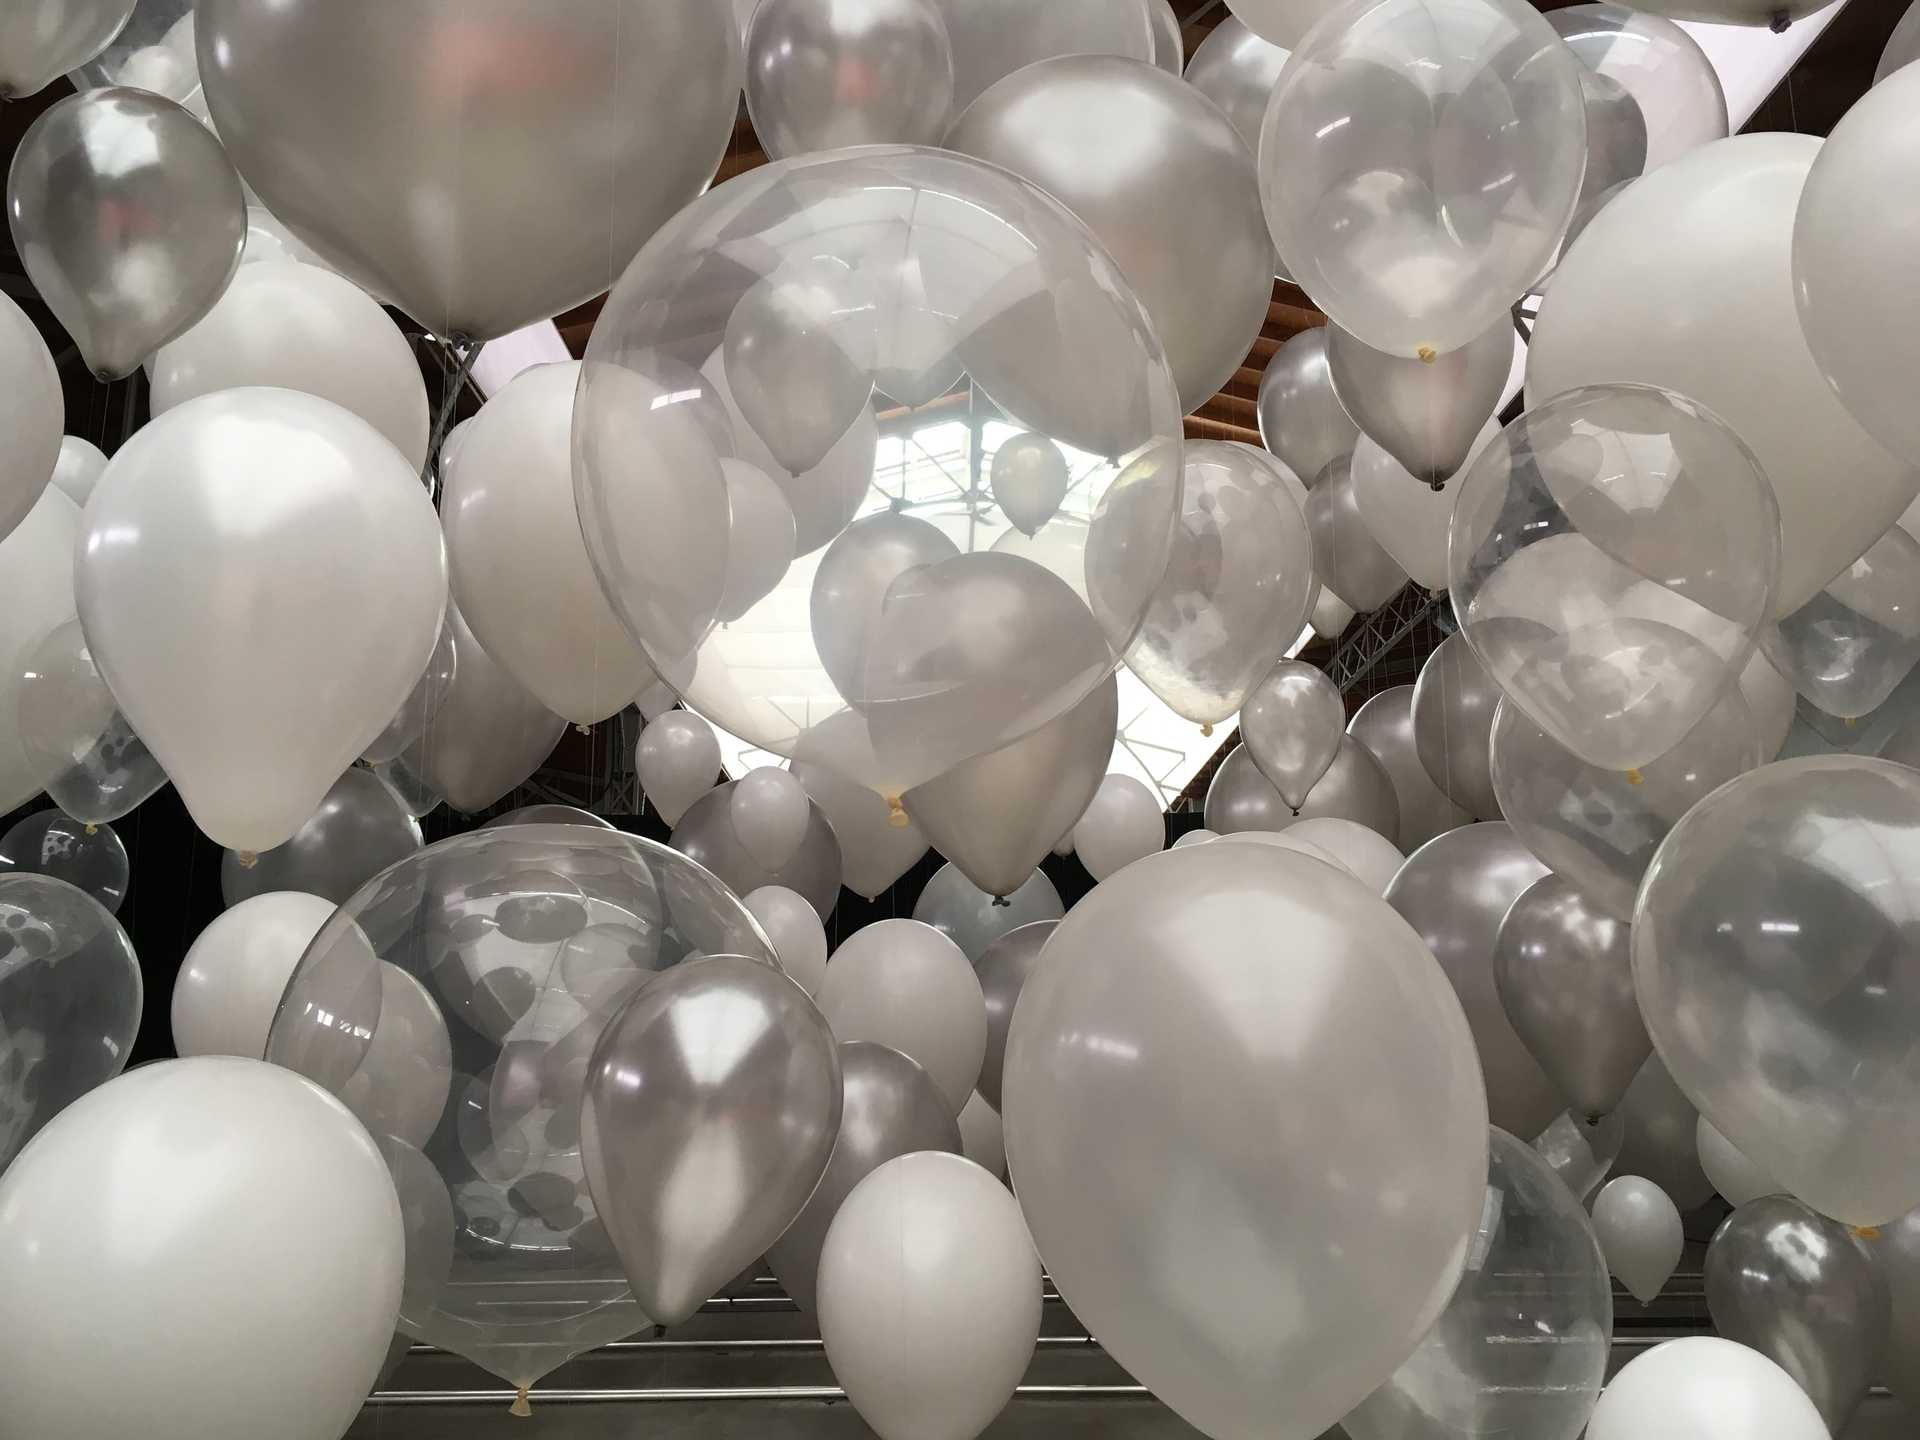 Viele weiße und silberne Ballons hängen in der Luft in Wien.